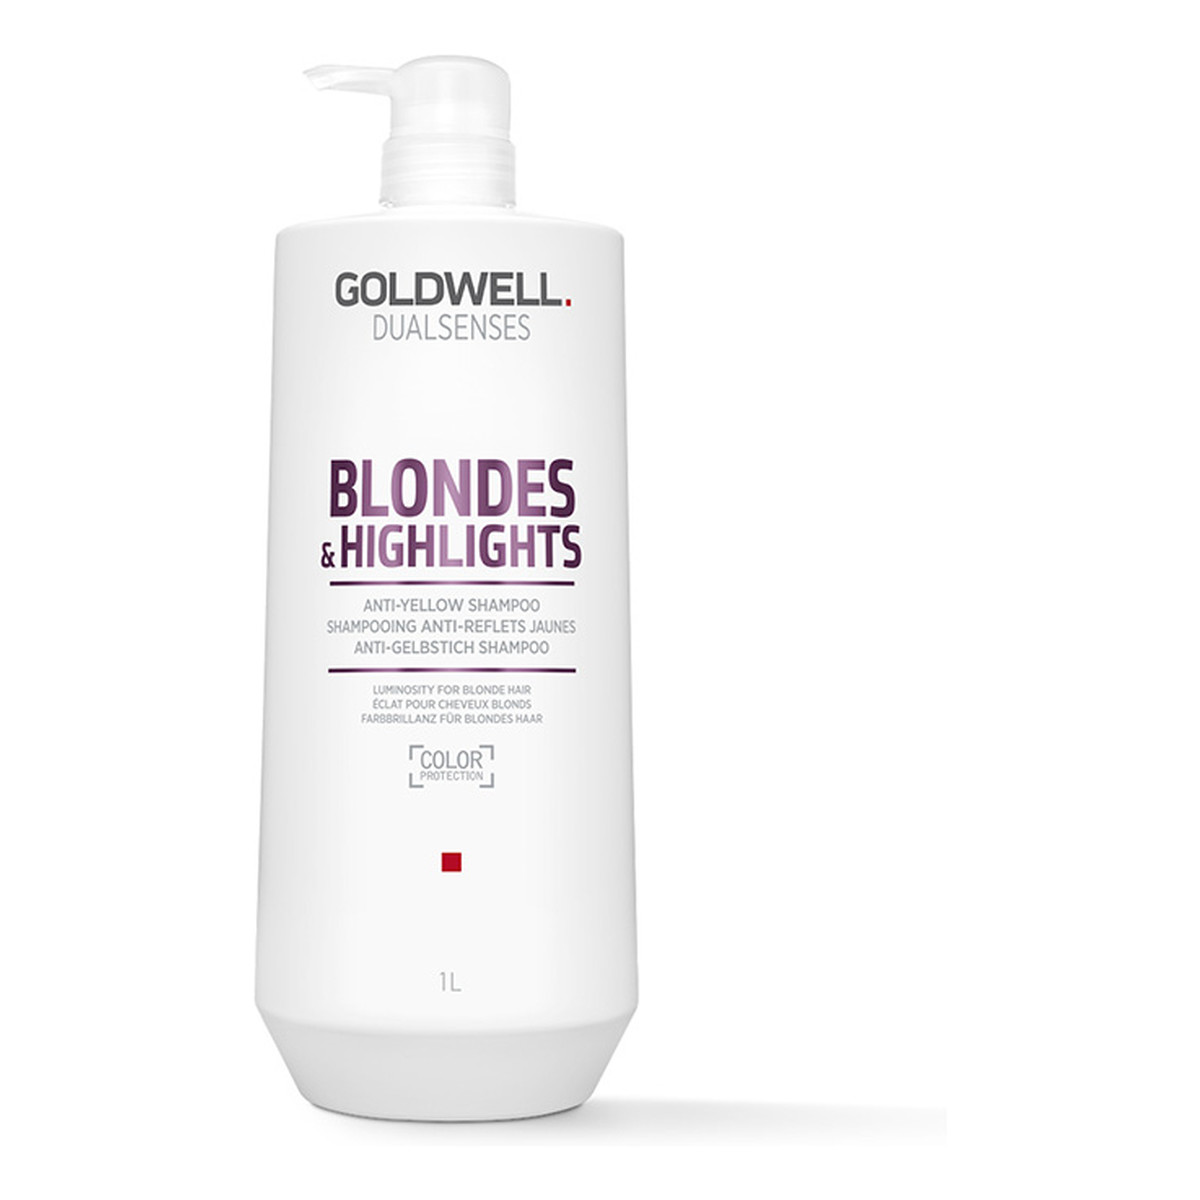 Goldwell Dualsenses Blondes & Highlights Anti-Yellow Shampoo Szampon do włosów blond neutralizujący żółty odcień 1000ml